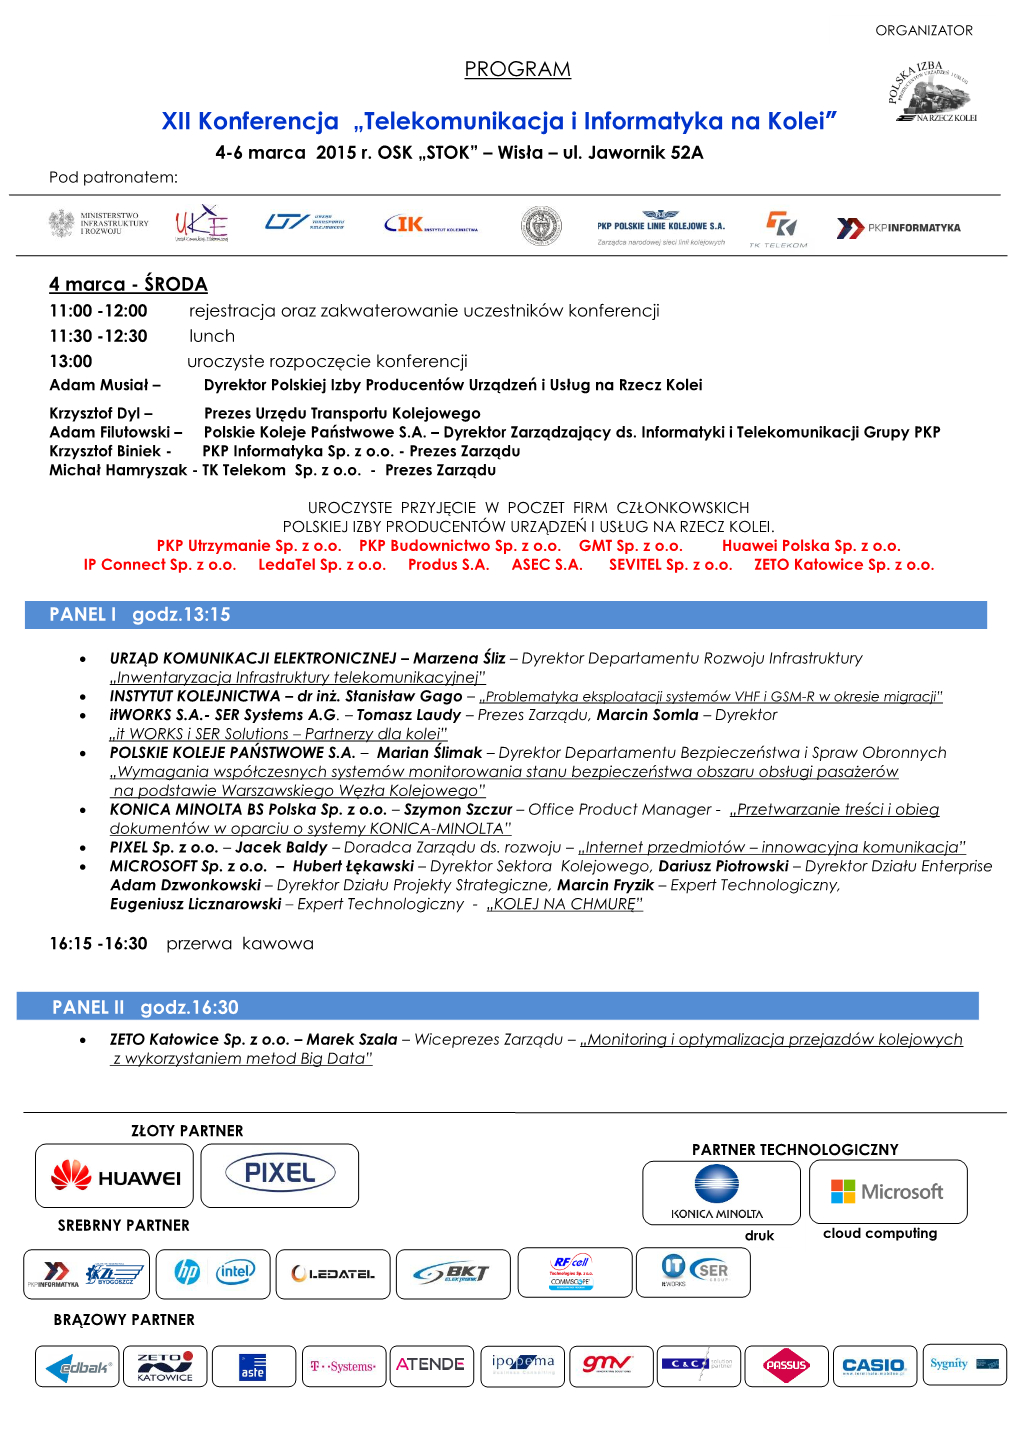 XII Konferencja „Telekomunikacja I Informatyka Na Kolei״